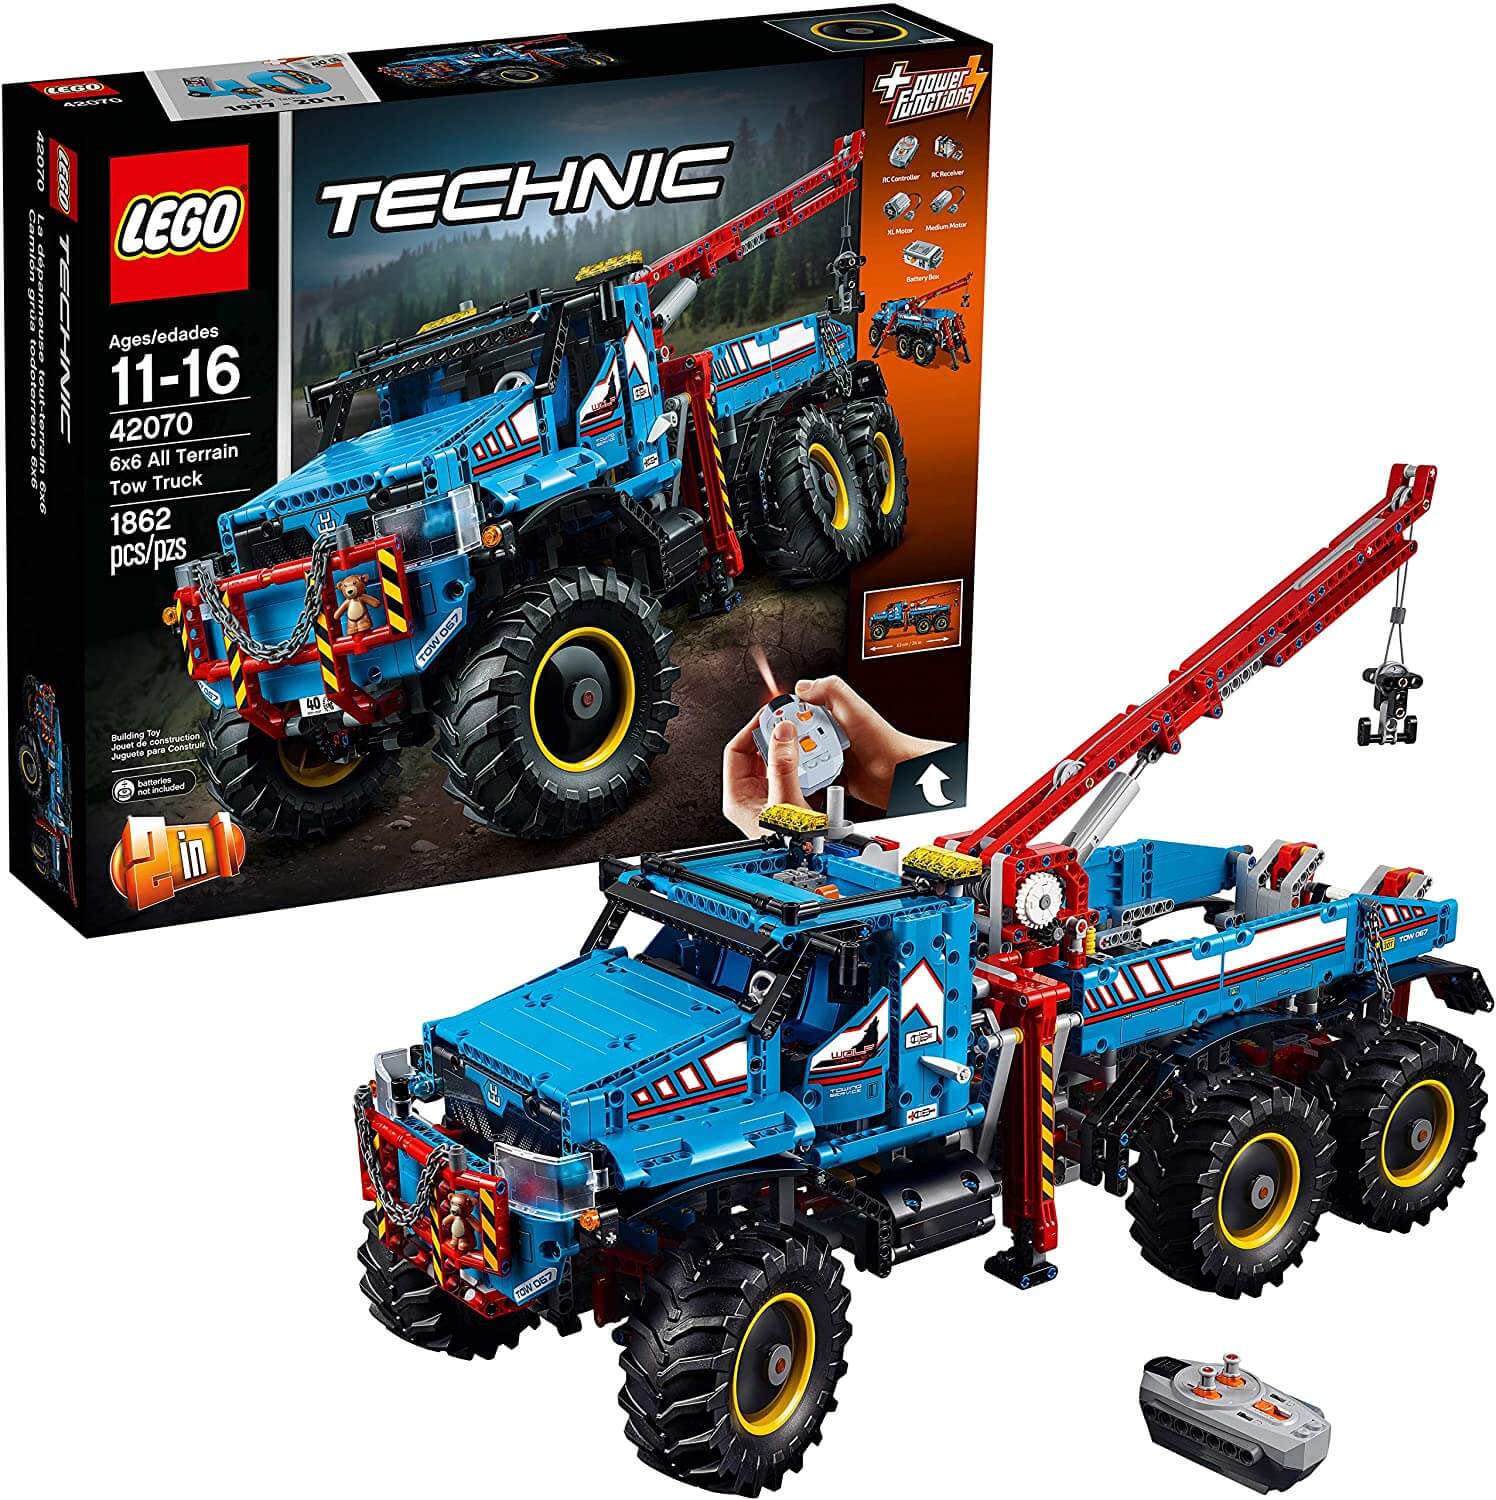 Конструктор LEGO 42070 Technic - Аварийный внедорожник 6х6 конструктор lego 42070 technic аварийный внедорожник 6х6